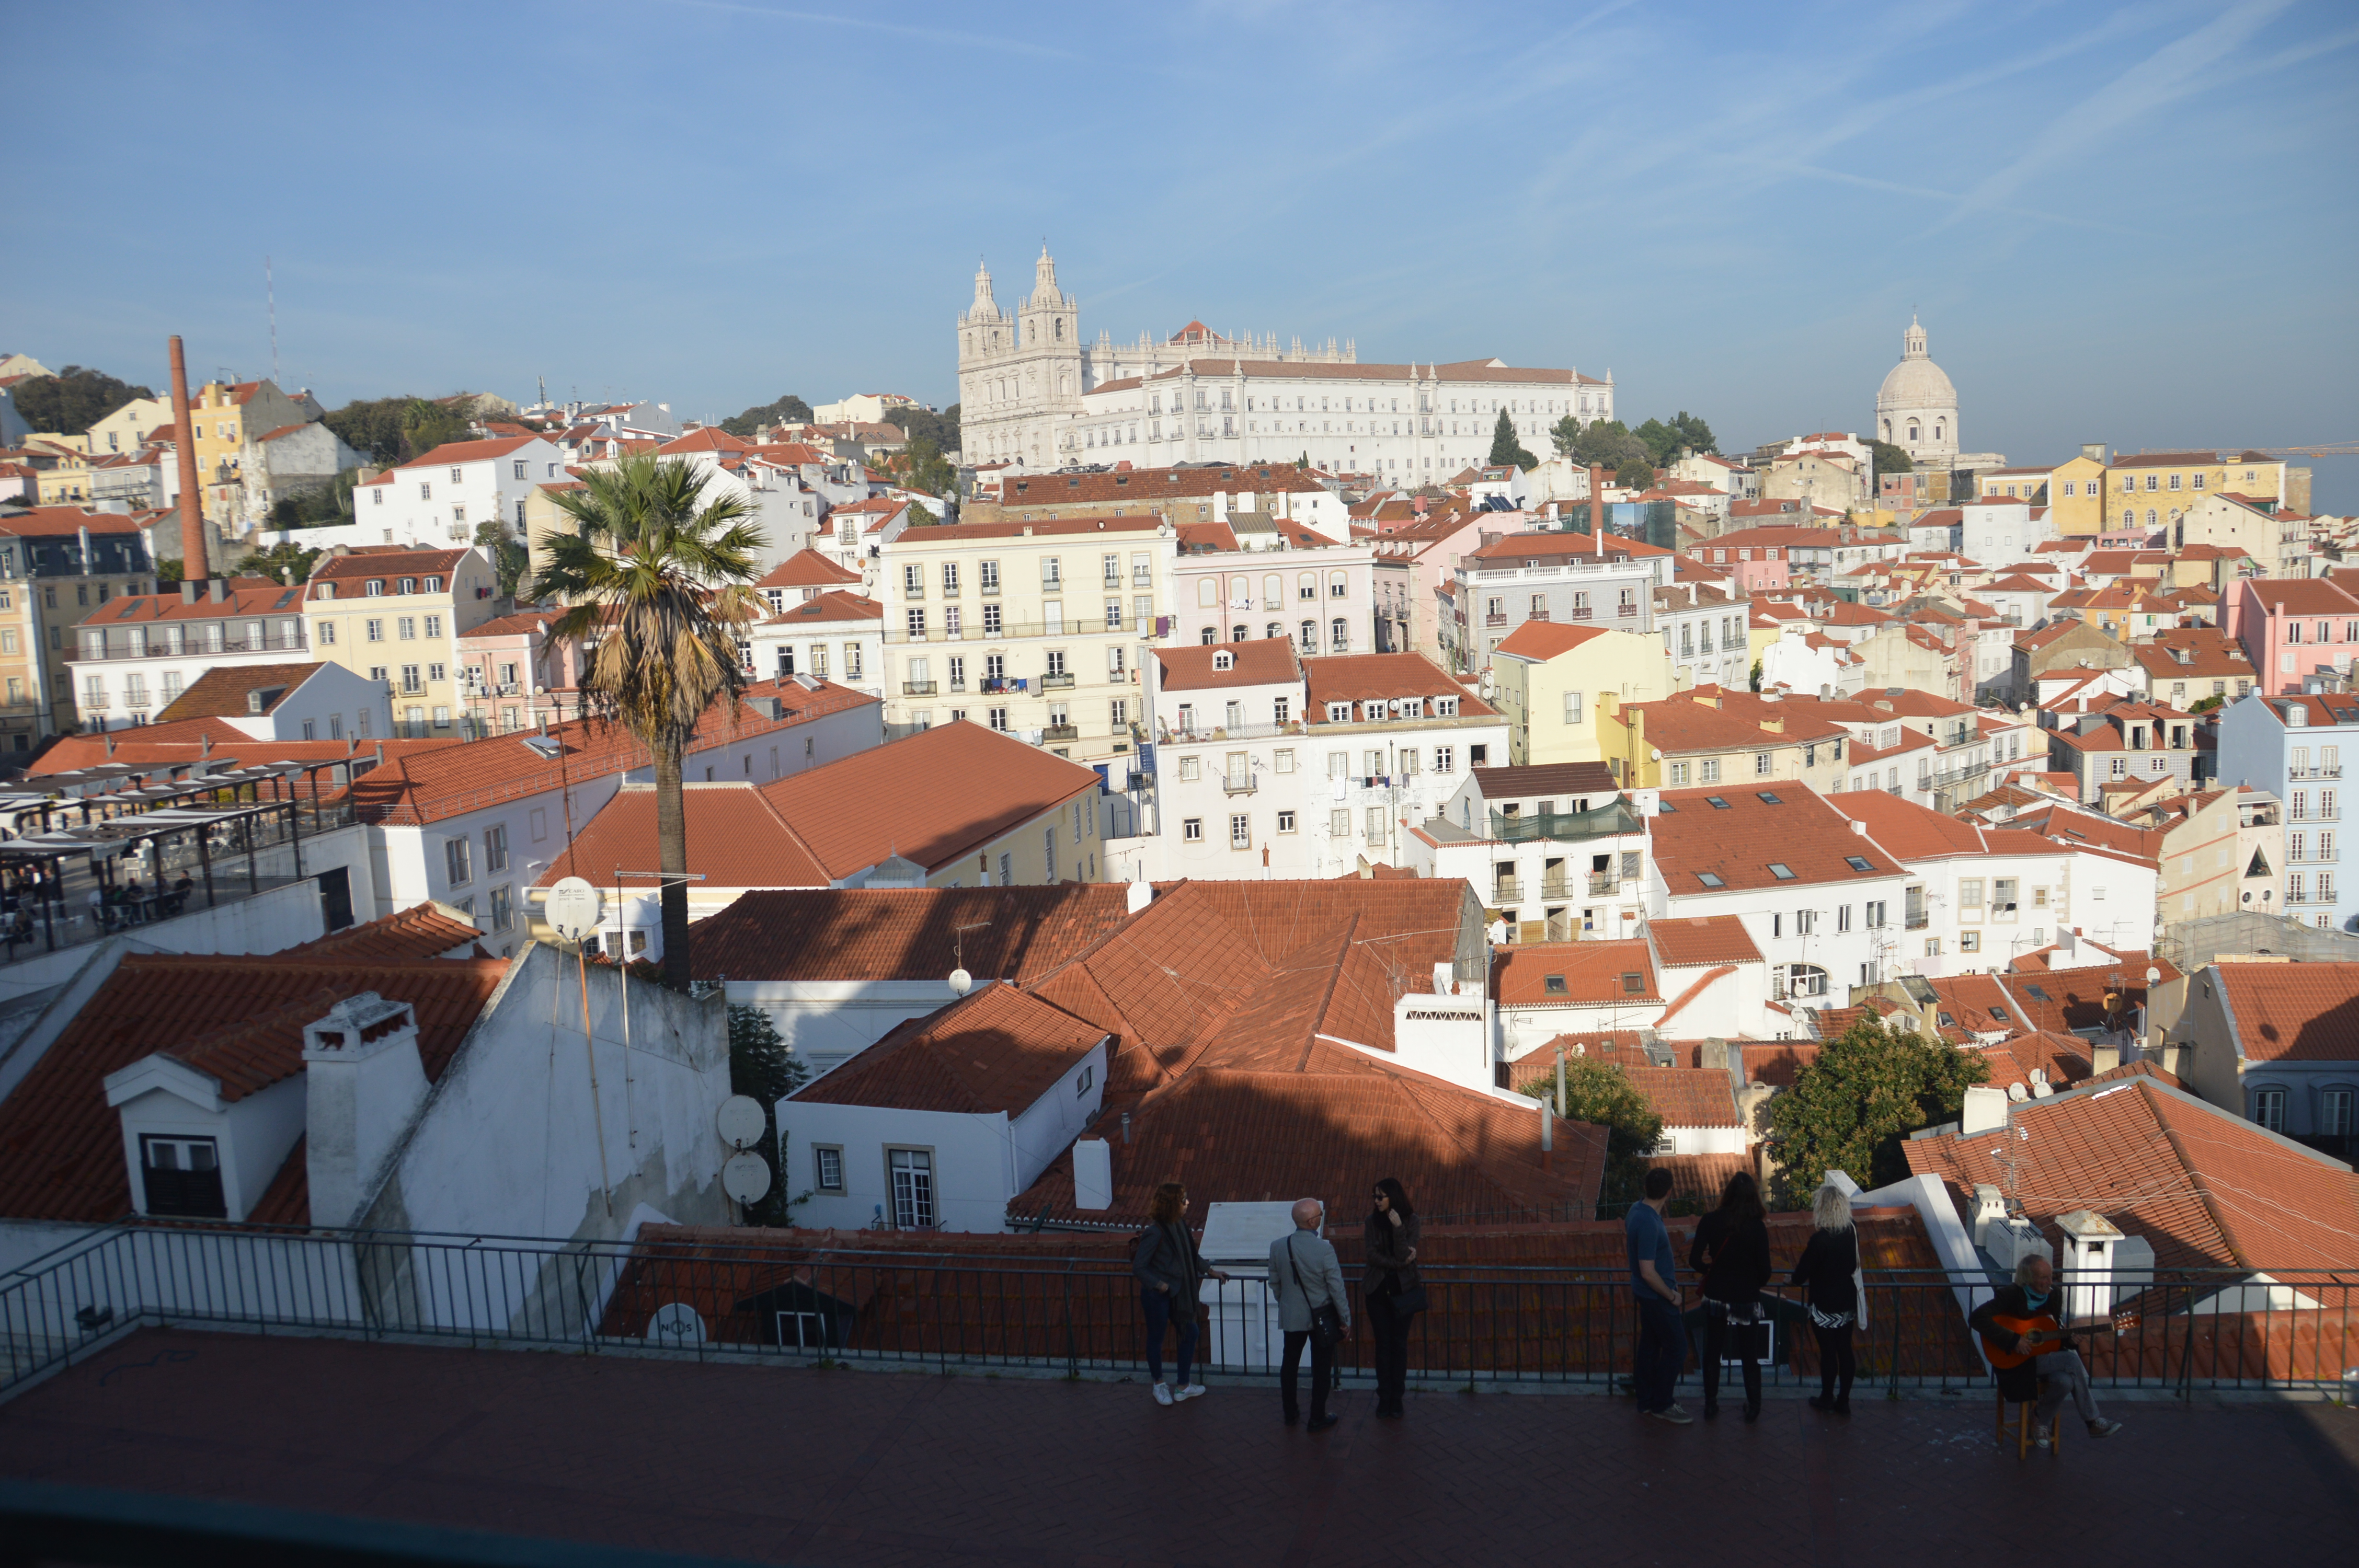 De highlights van Alfama in Lissabon